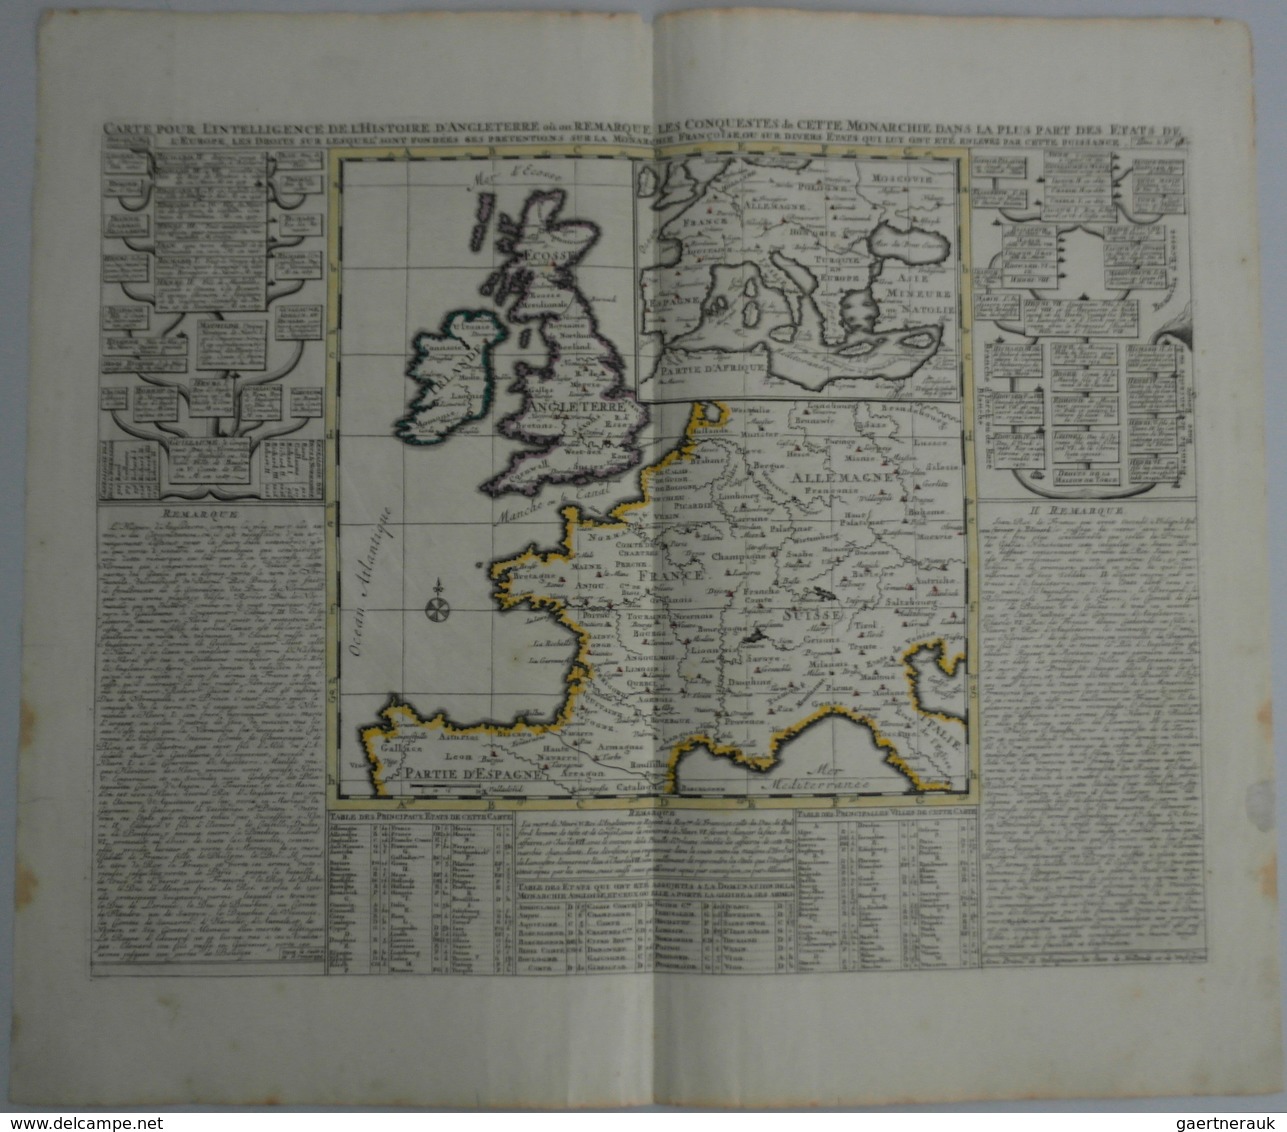 Landkarten Und Stiche: 1720 (ca.): Carte Pour L'Intelligence De L'Histoire D'Angleterre Ou On Remarq - Geographie